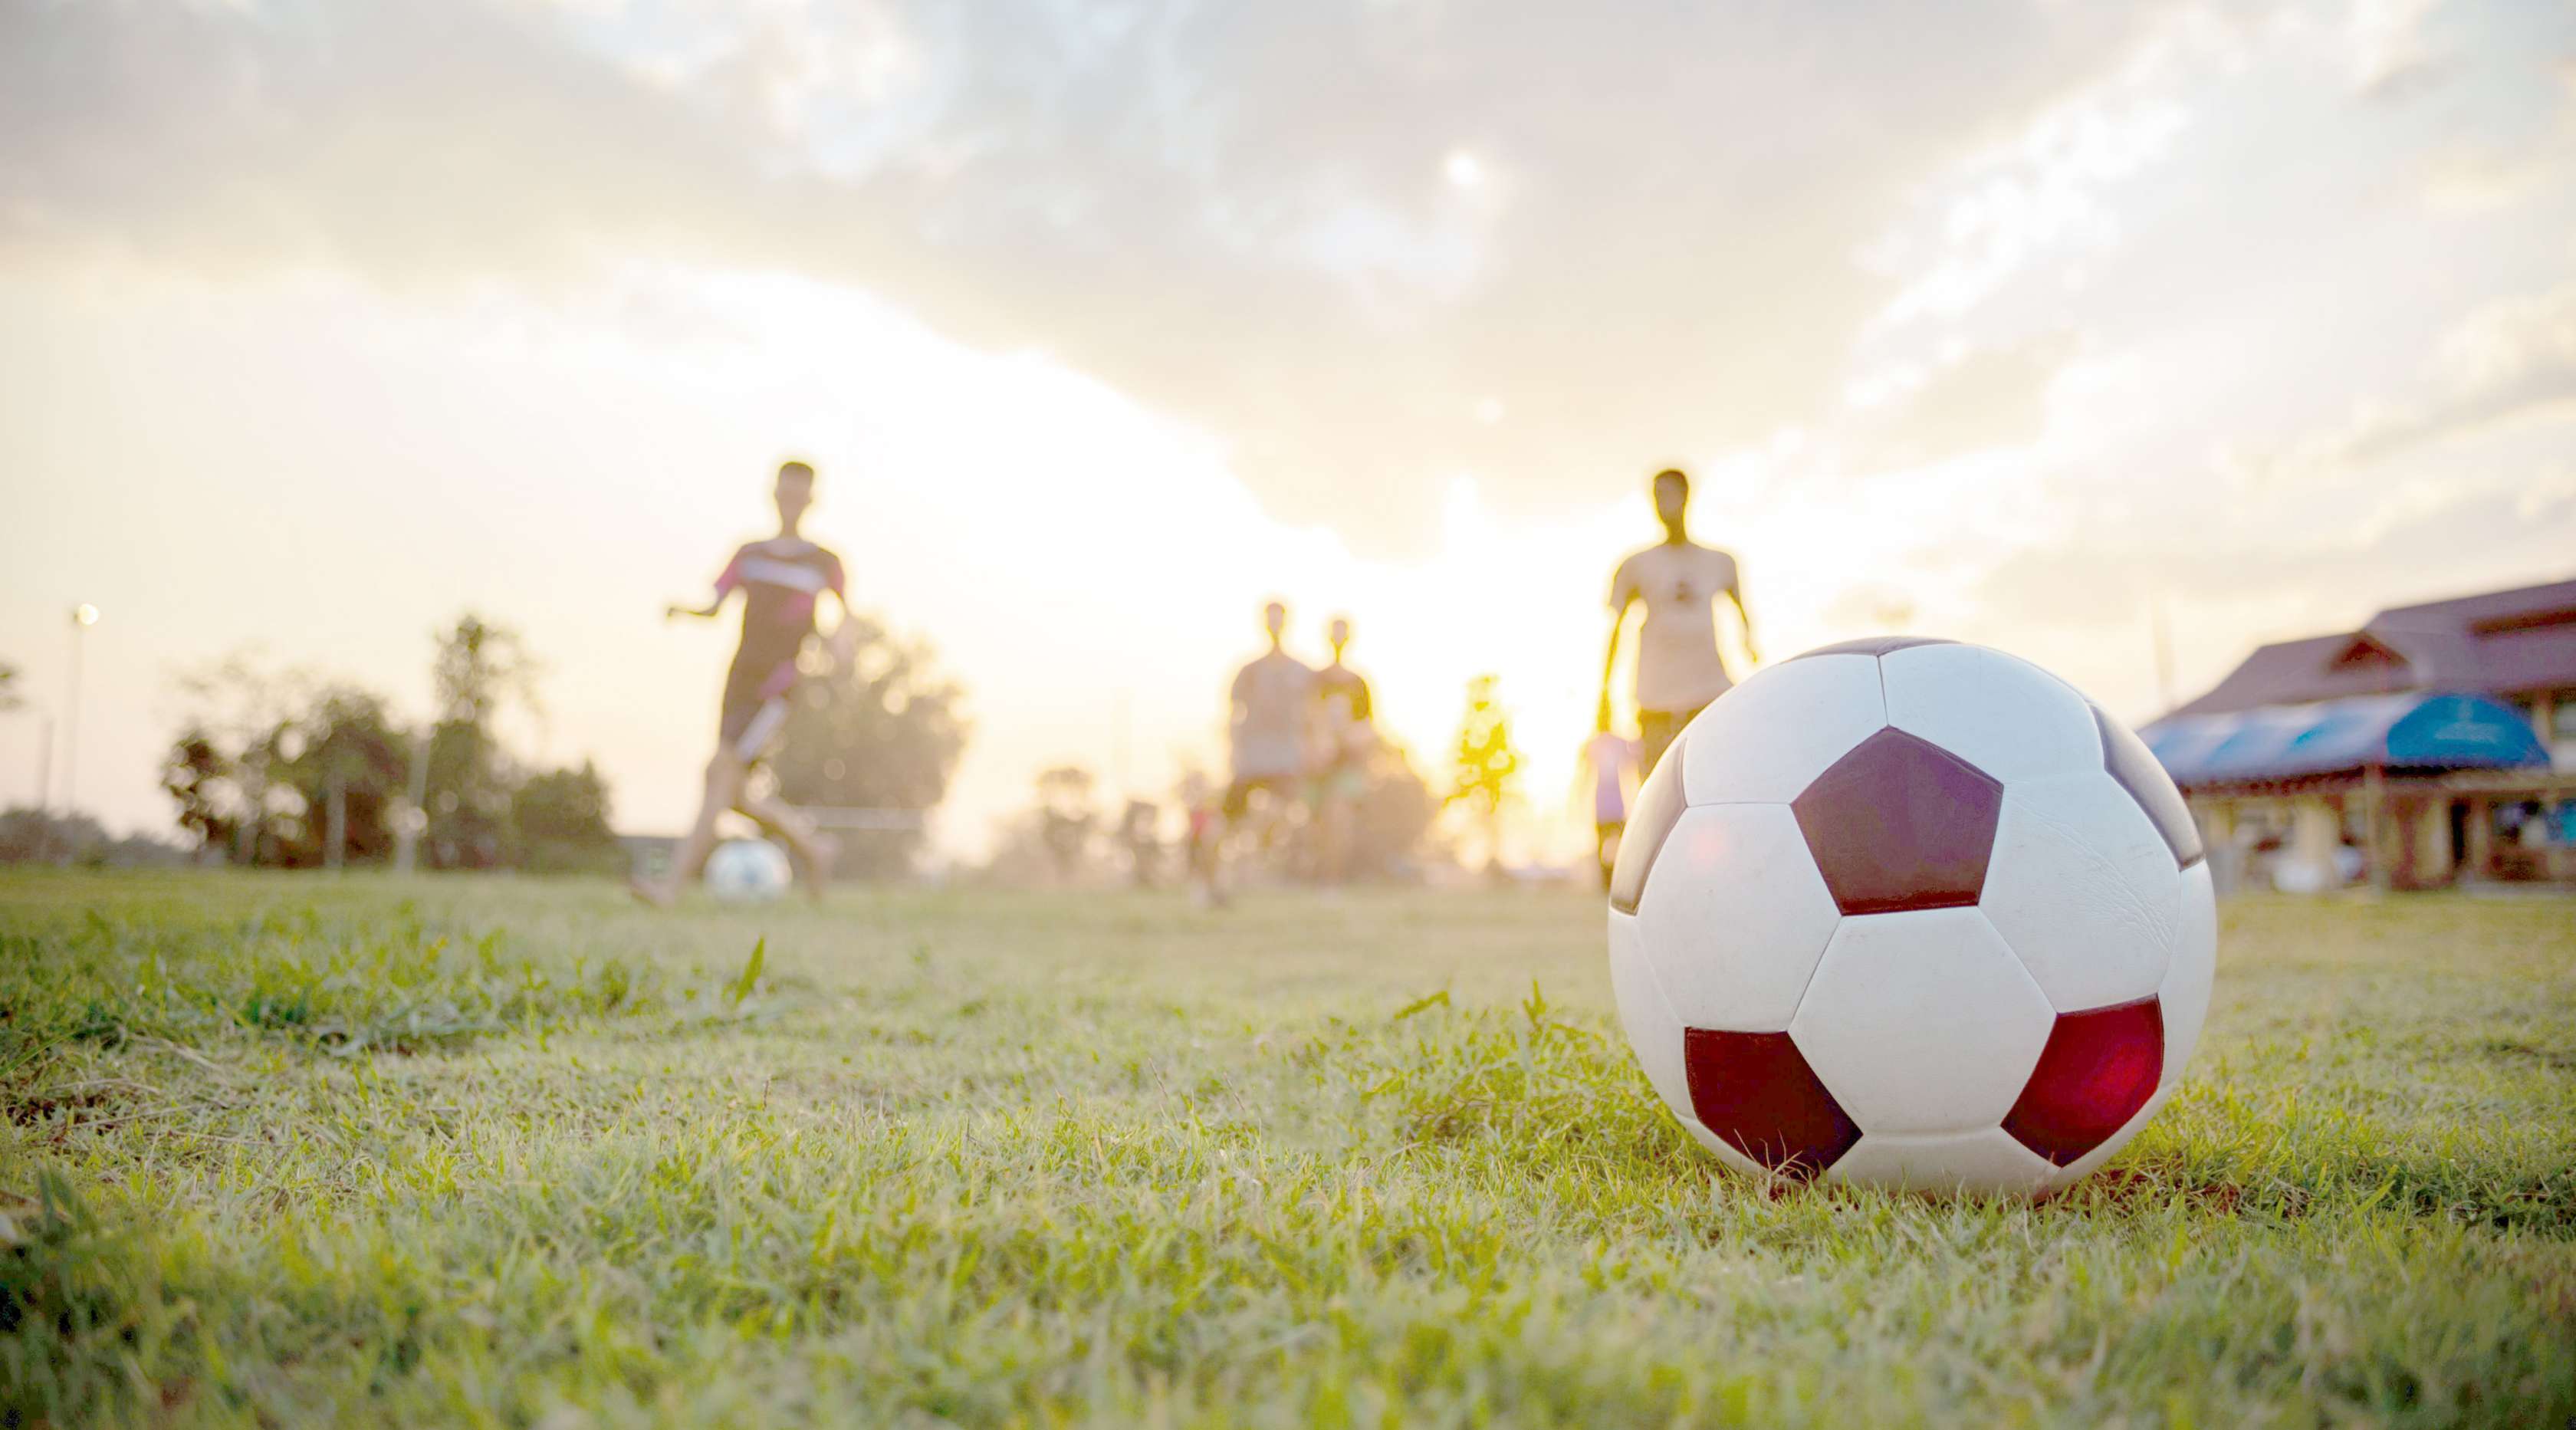 Vereinsversicherung - Ein Fußball liegt im Abendlicht auf einer Wiese, dahinter zeichnen sich vor dem Himmel die Silhouetten einzelner Spieler ab.